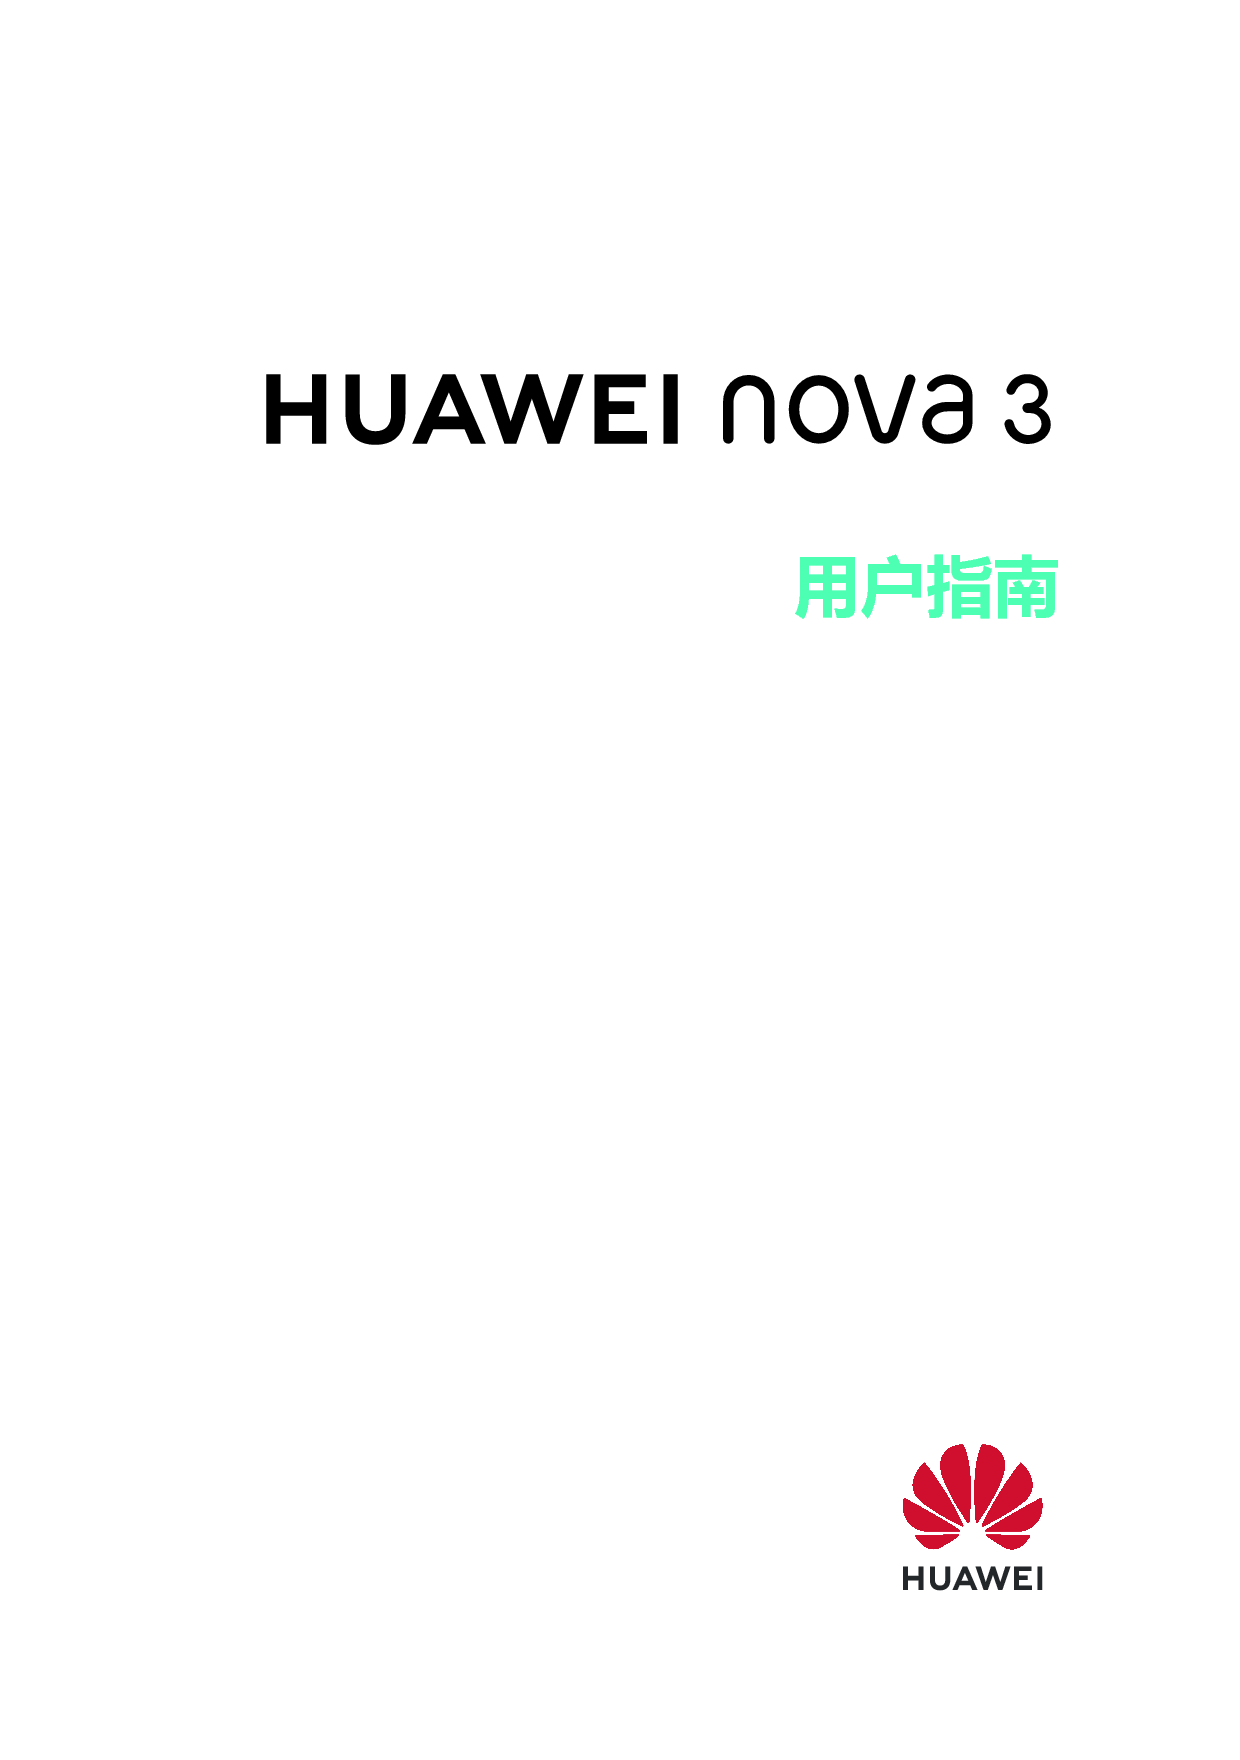 华为 Huawei NOVA 3 EMUI9.0 用户指南 封面